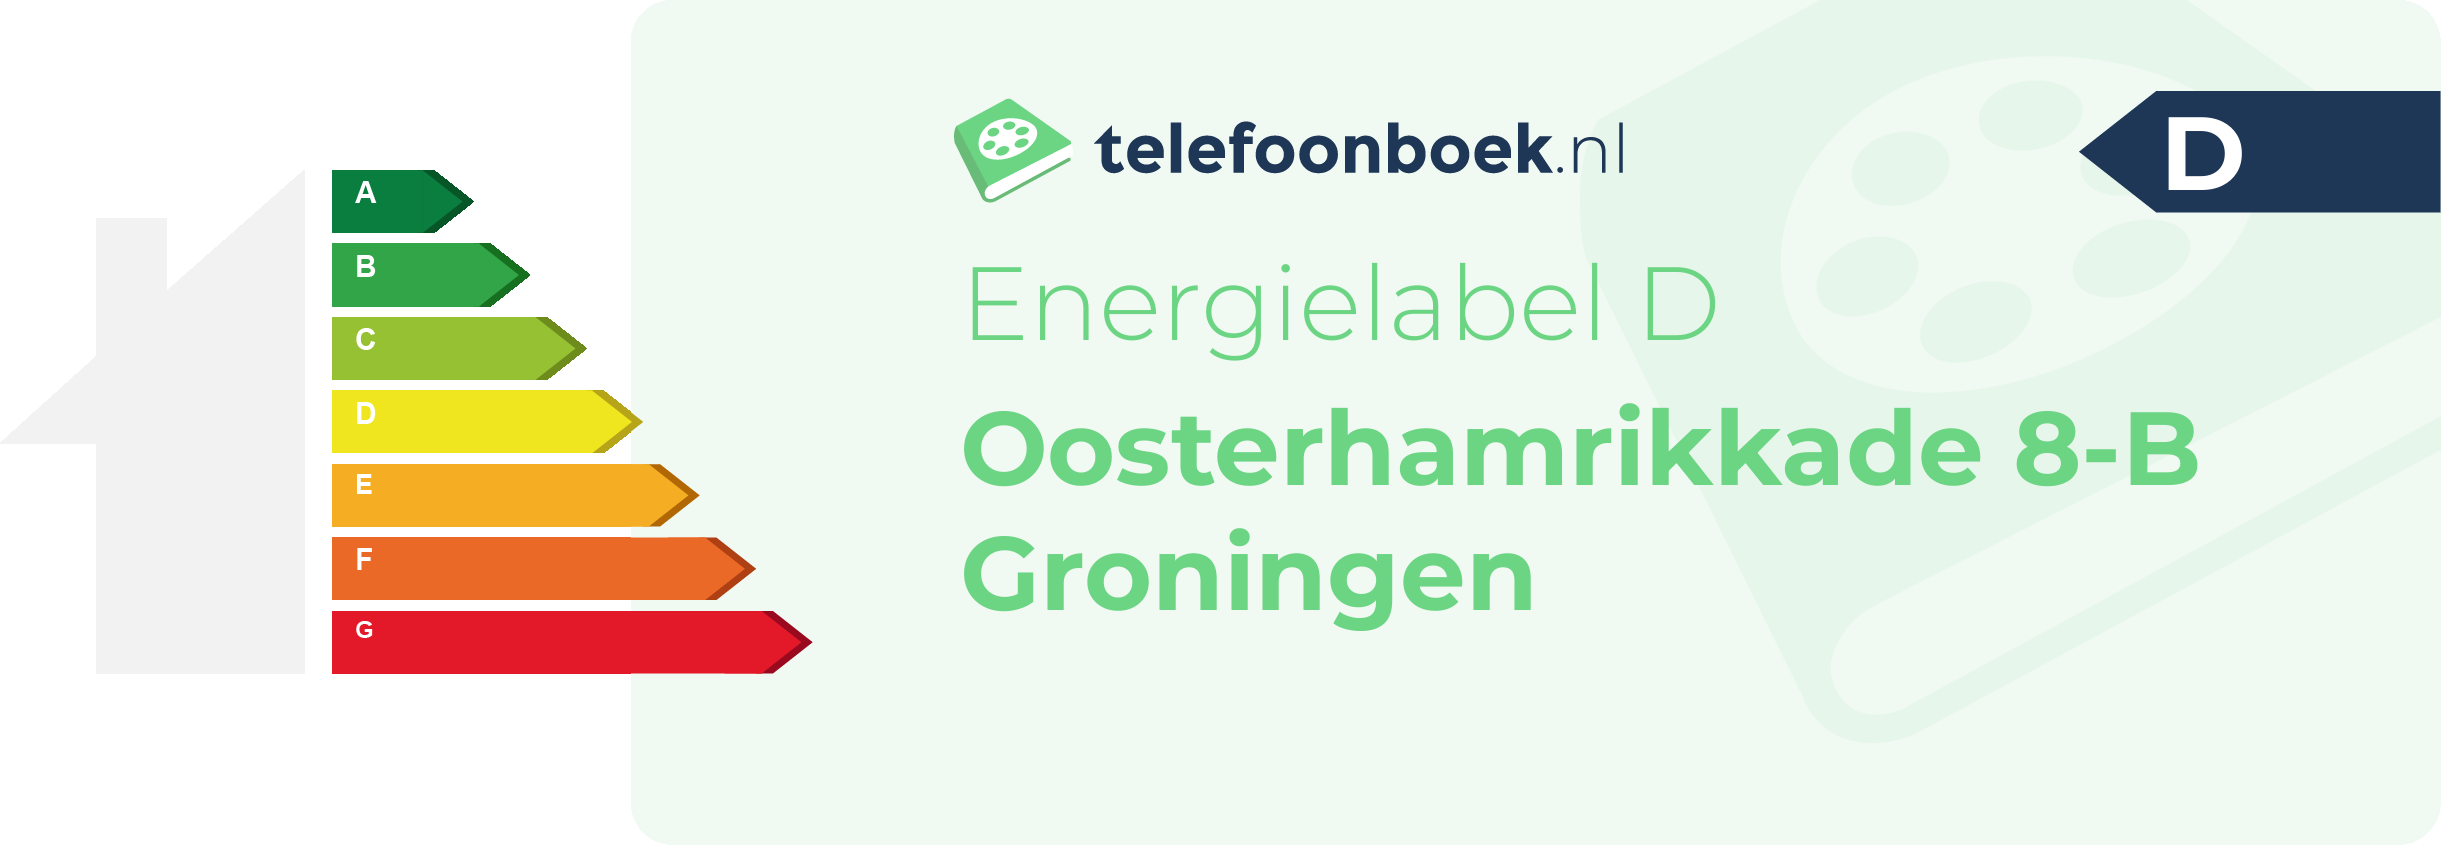 Energielabel Oosterhamrikkade 8-B Groningen